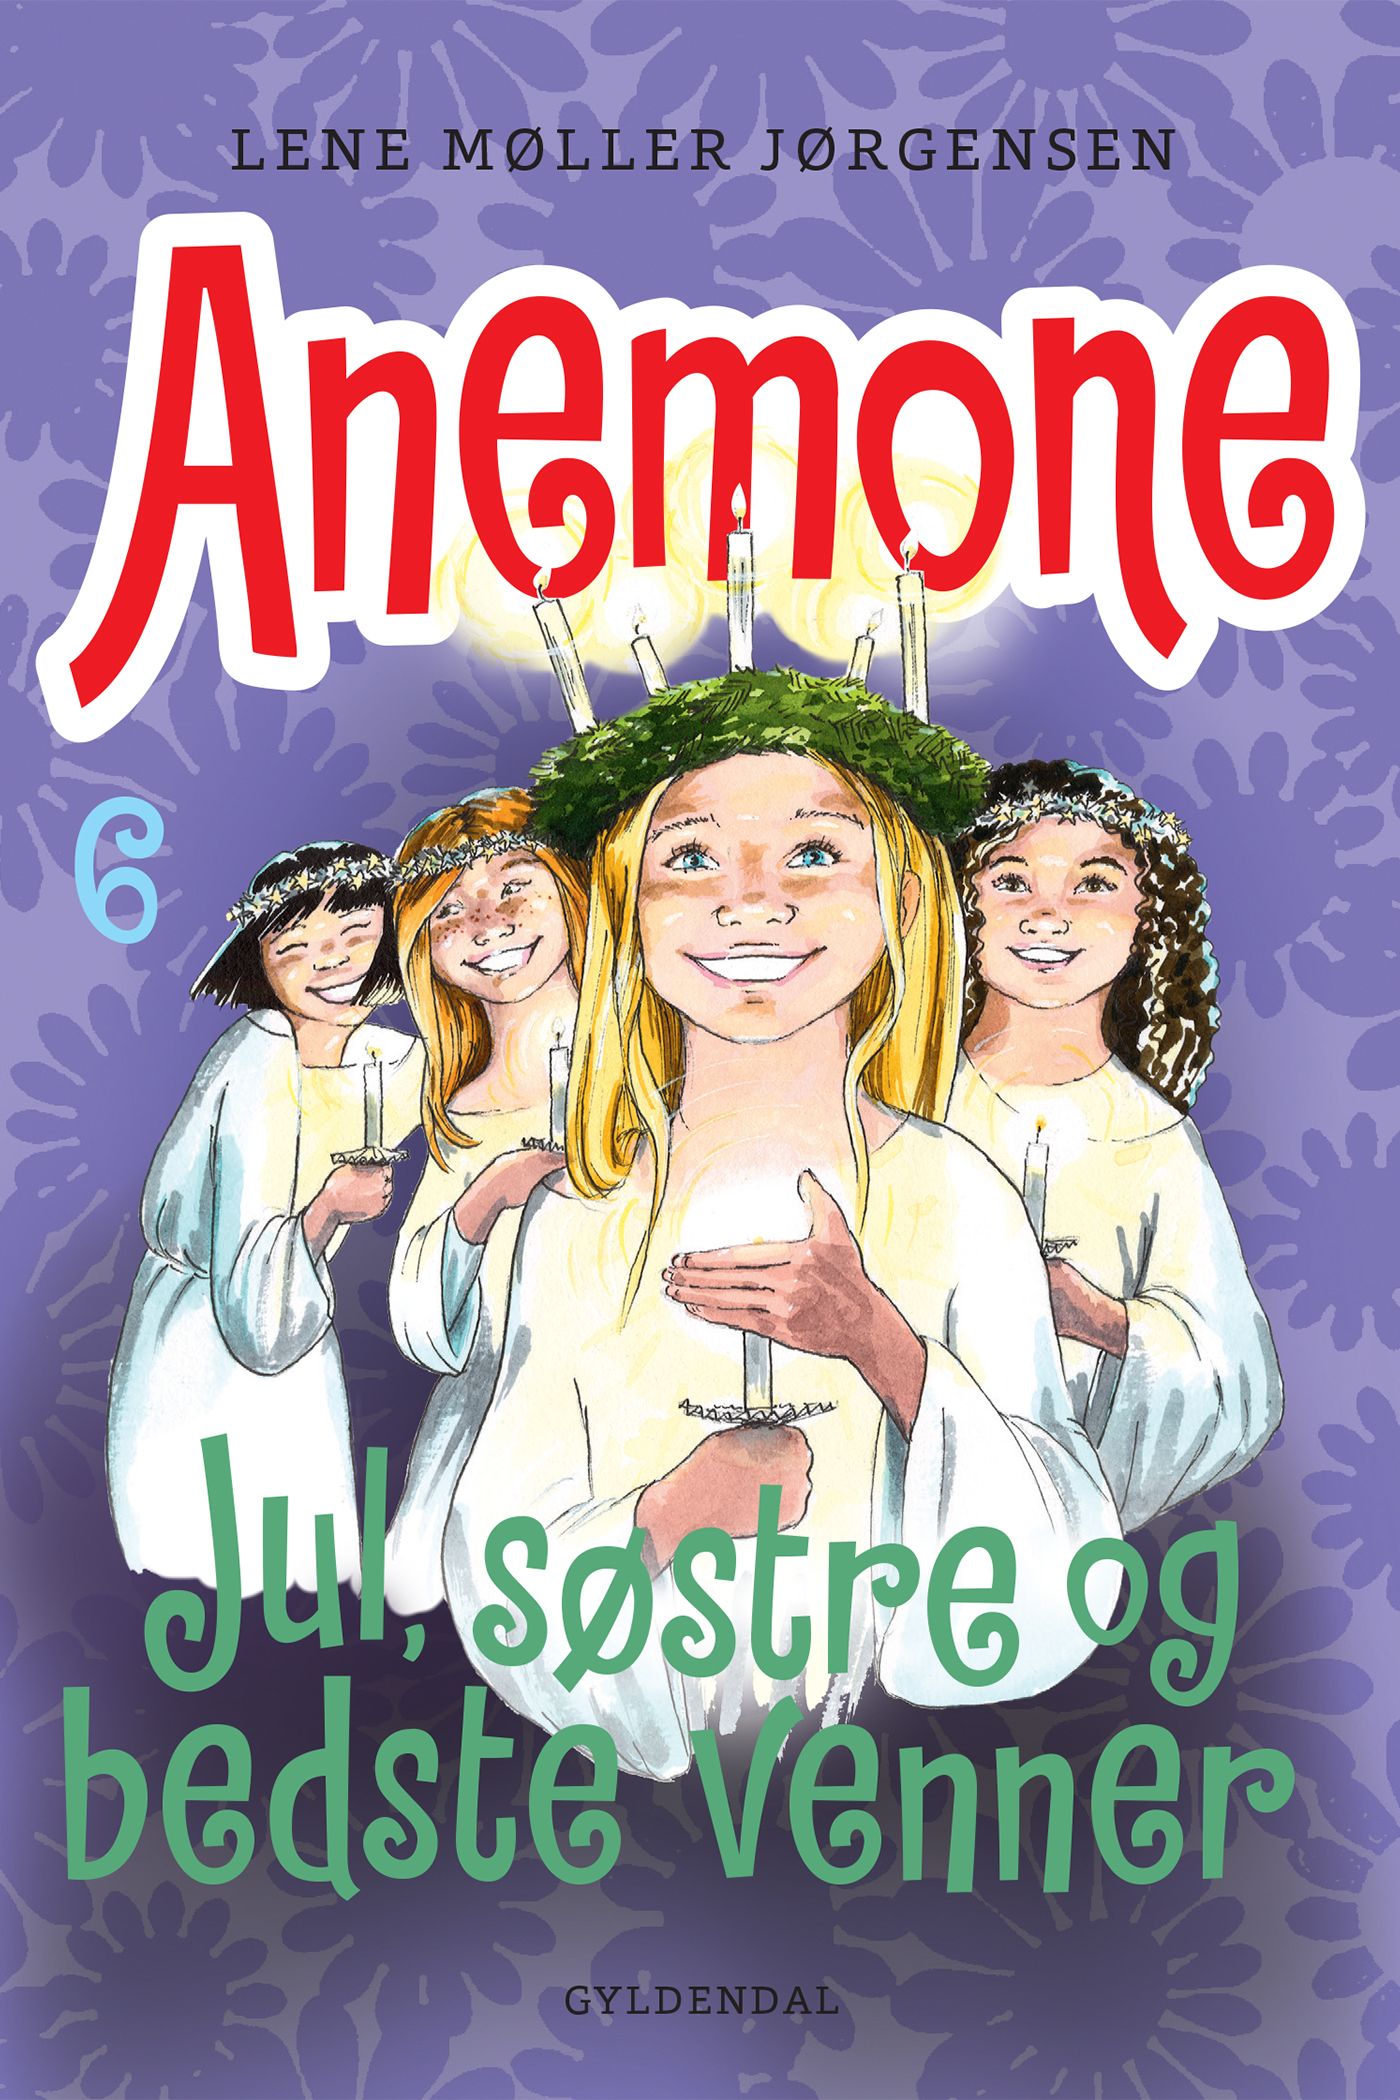 Anemone 6 - Jul, søstre og bedste venner, e-bok av Lene Møller Jørgensen